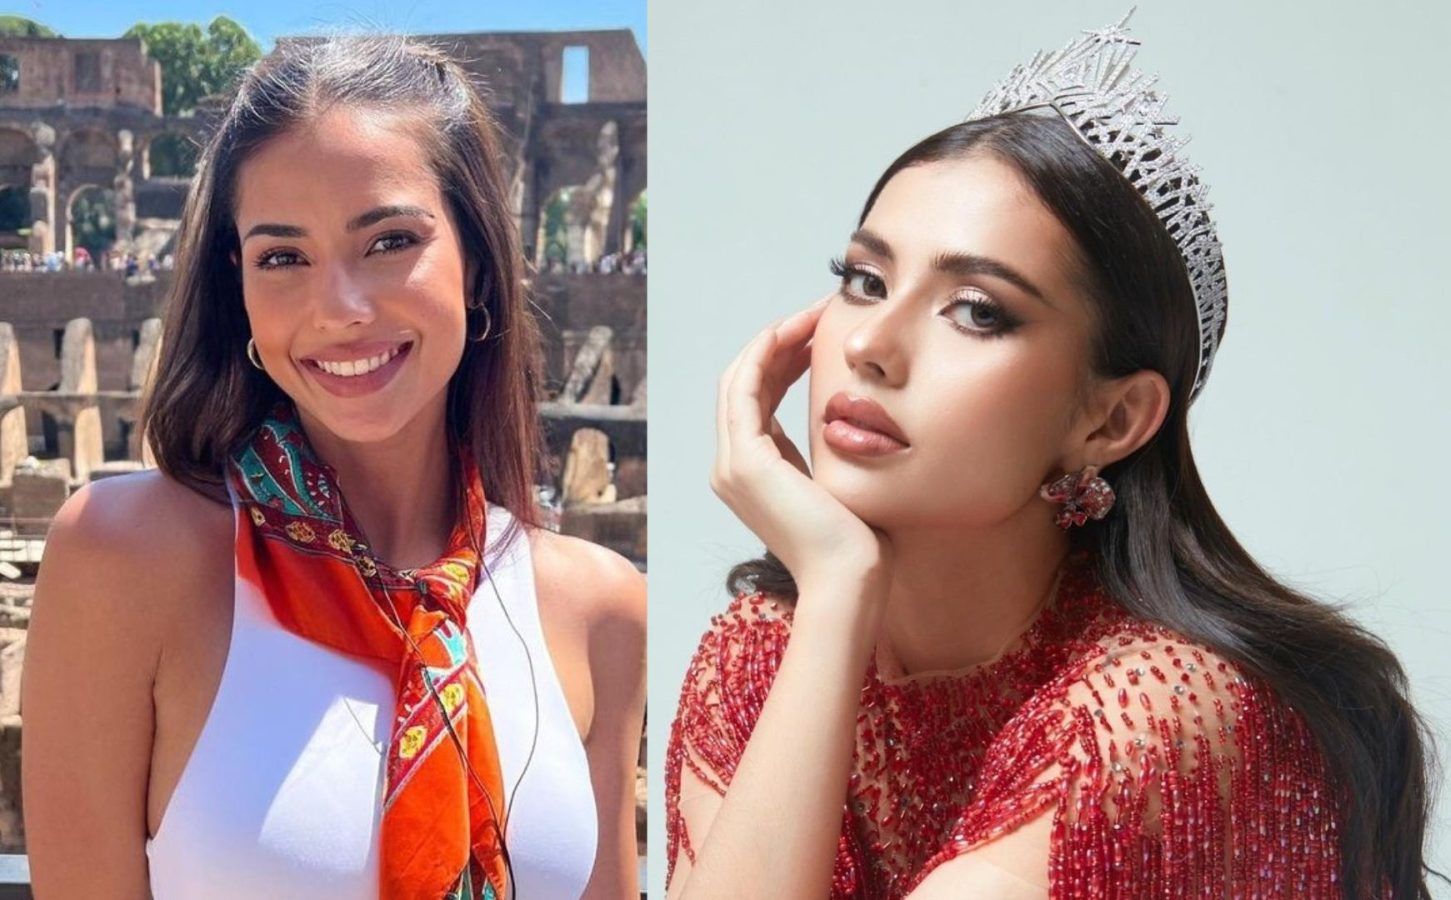 Interview: Anntonia Porsild, Miss Universe Thailand, on inspiring change